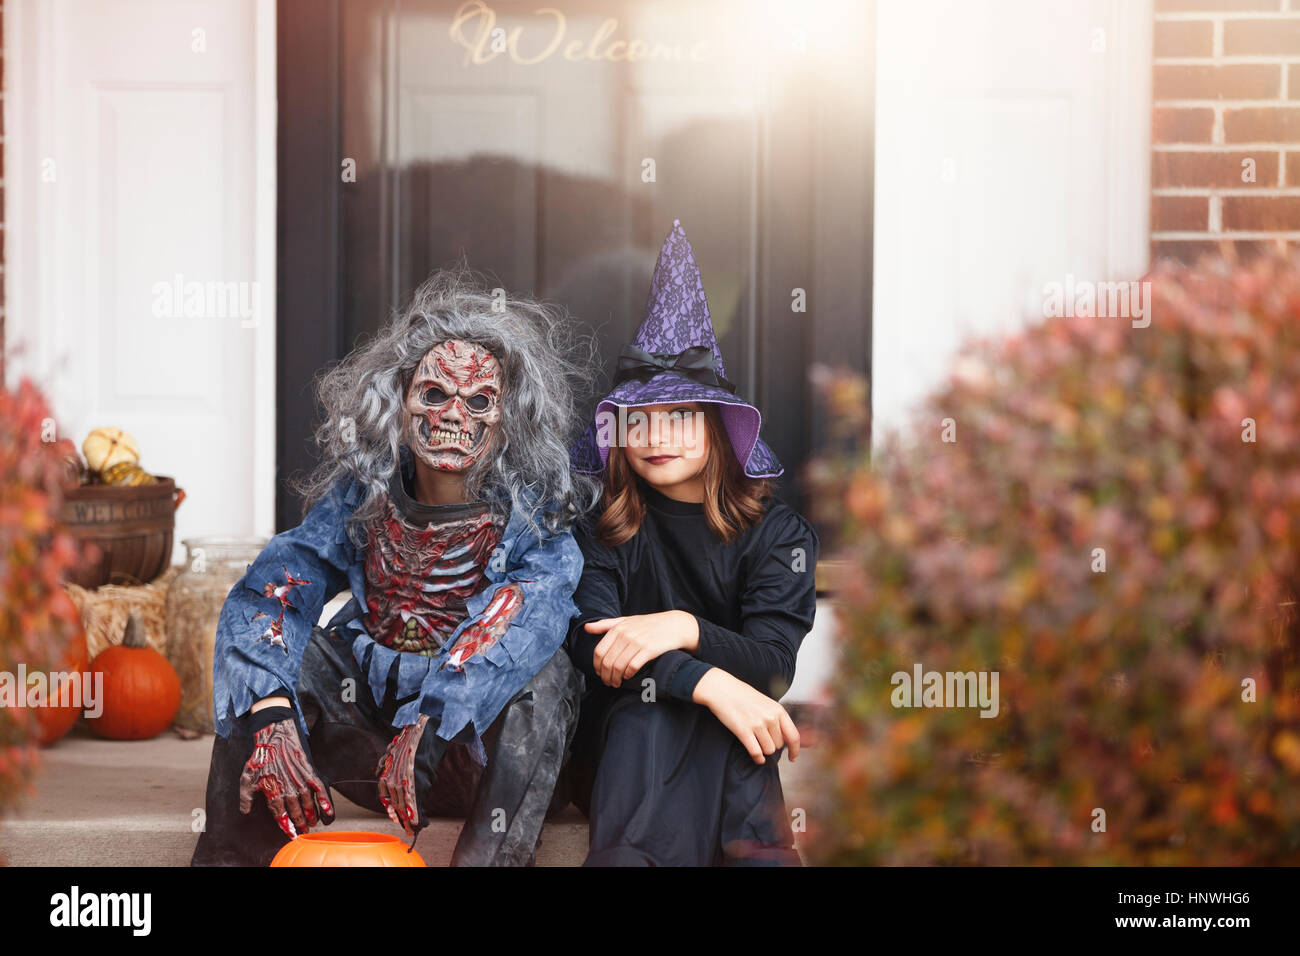 Les amis déguisés en sorcière et zombie, assis à l'avant l'étape d'accueil Banque D'Images